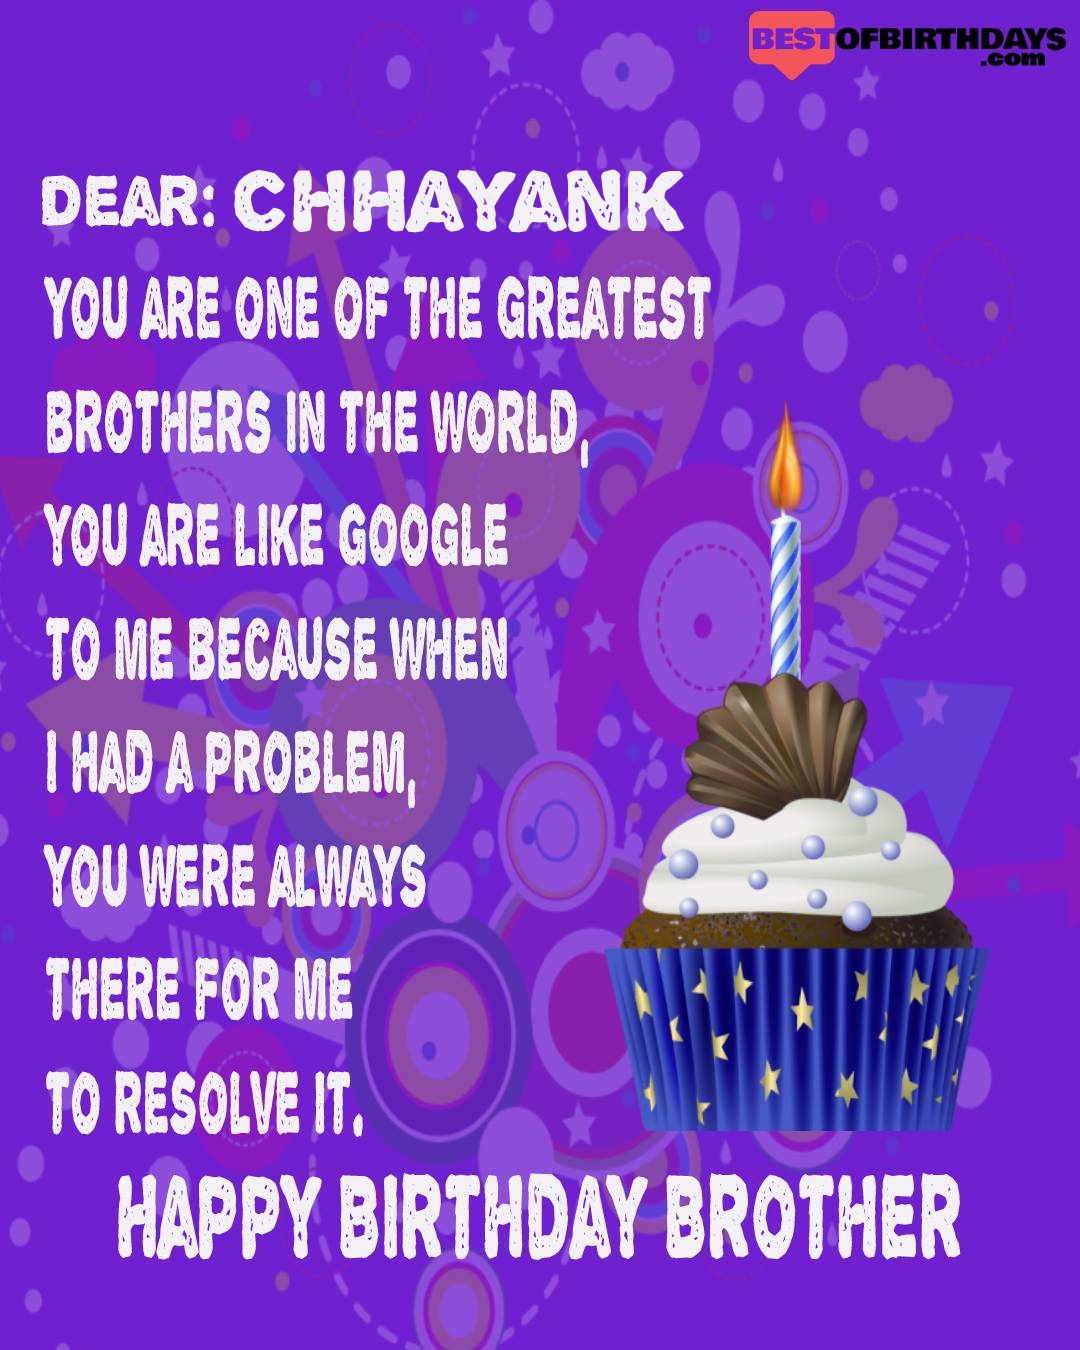 Happy birthday chhayank bhai brother bro